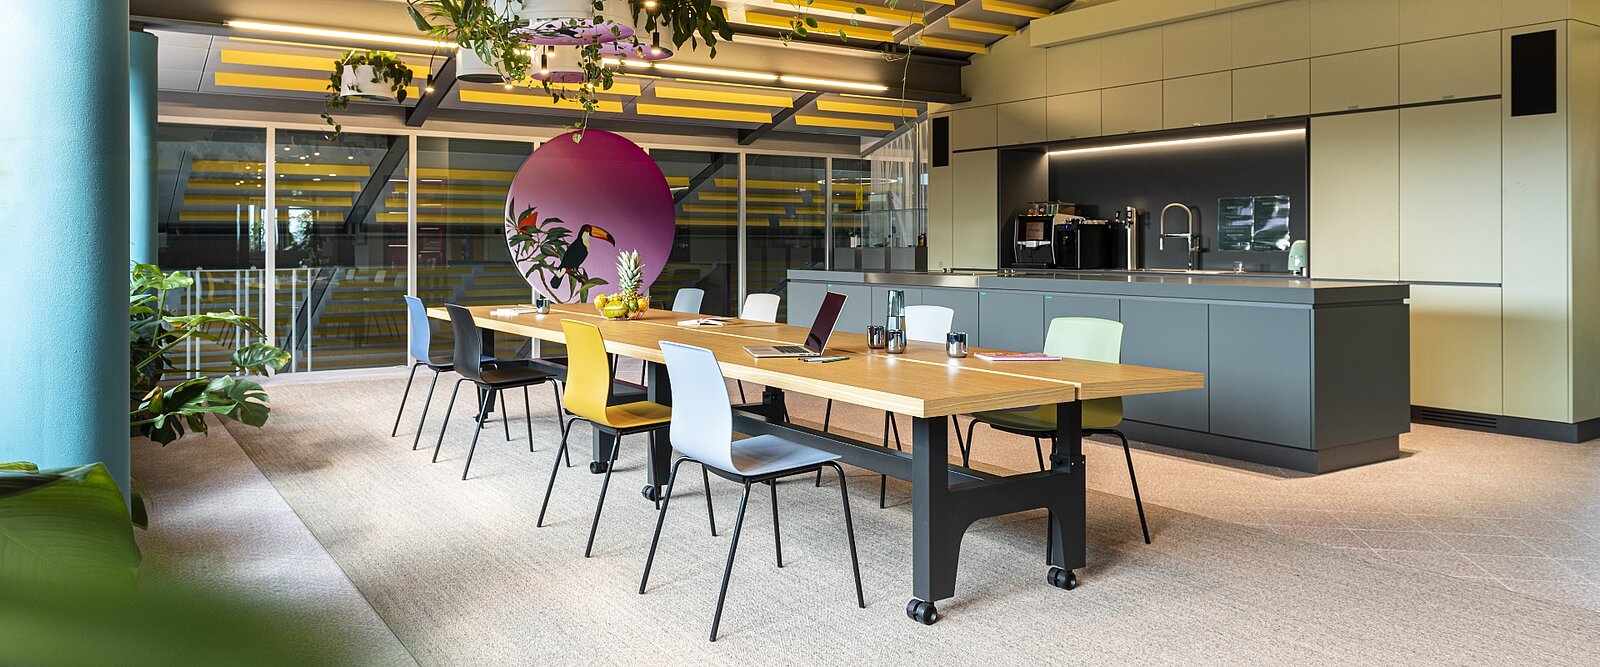 Convierta su oficina en un reflejo de la creatividad: Las salas de reuniones pueden diseñarse individualmente con Fiore.